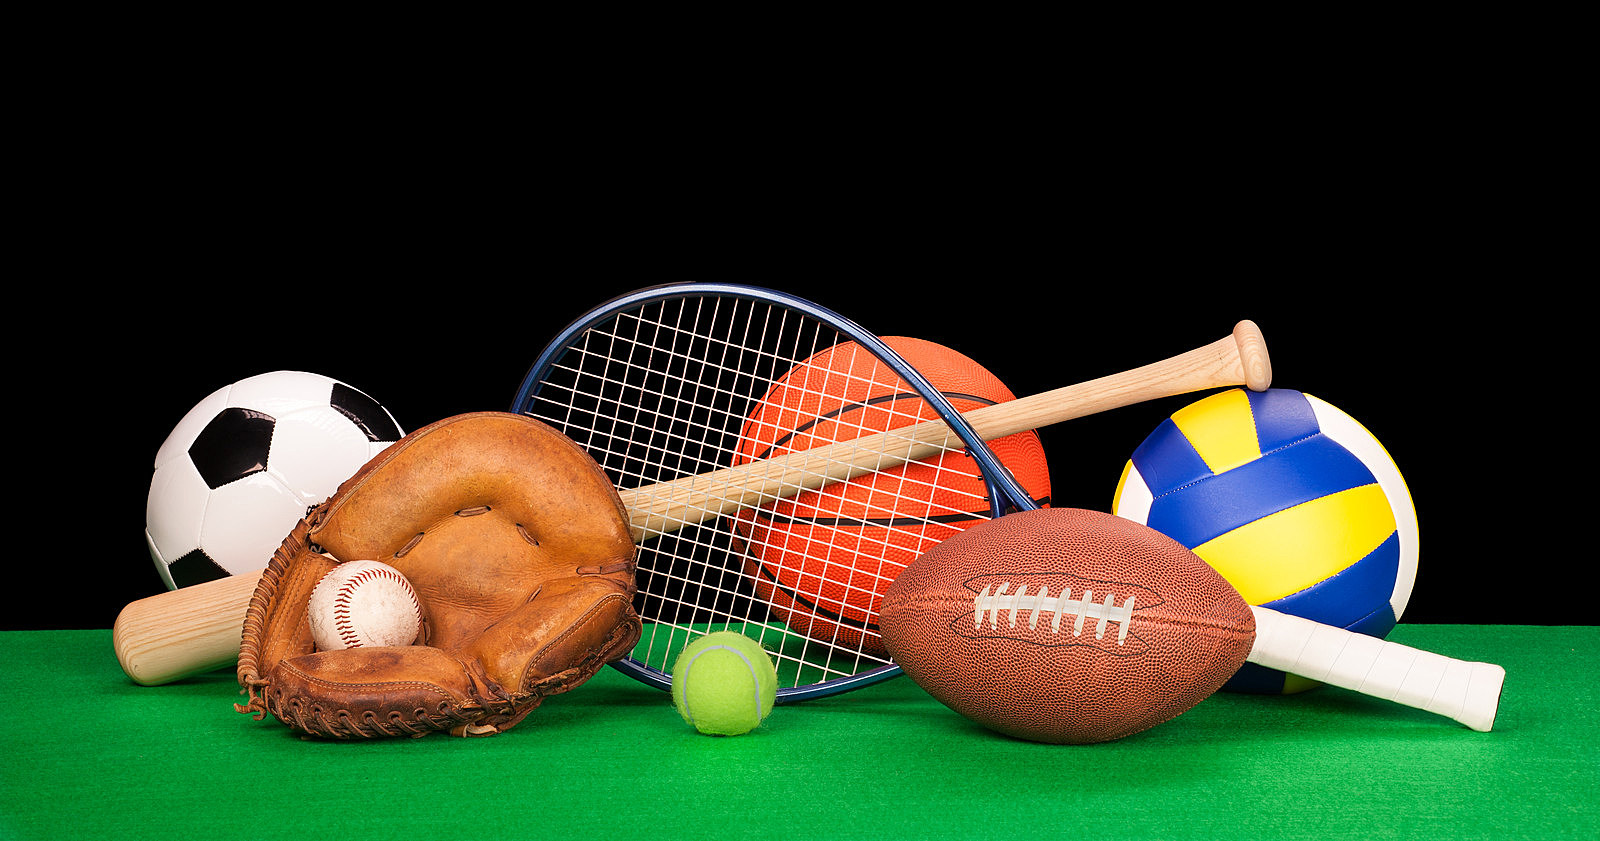 Игры теннис волейбол. Спортивный инвентарь. Спортивные атрибуты. Спортивная тематика. Спортивные игры с мячом.